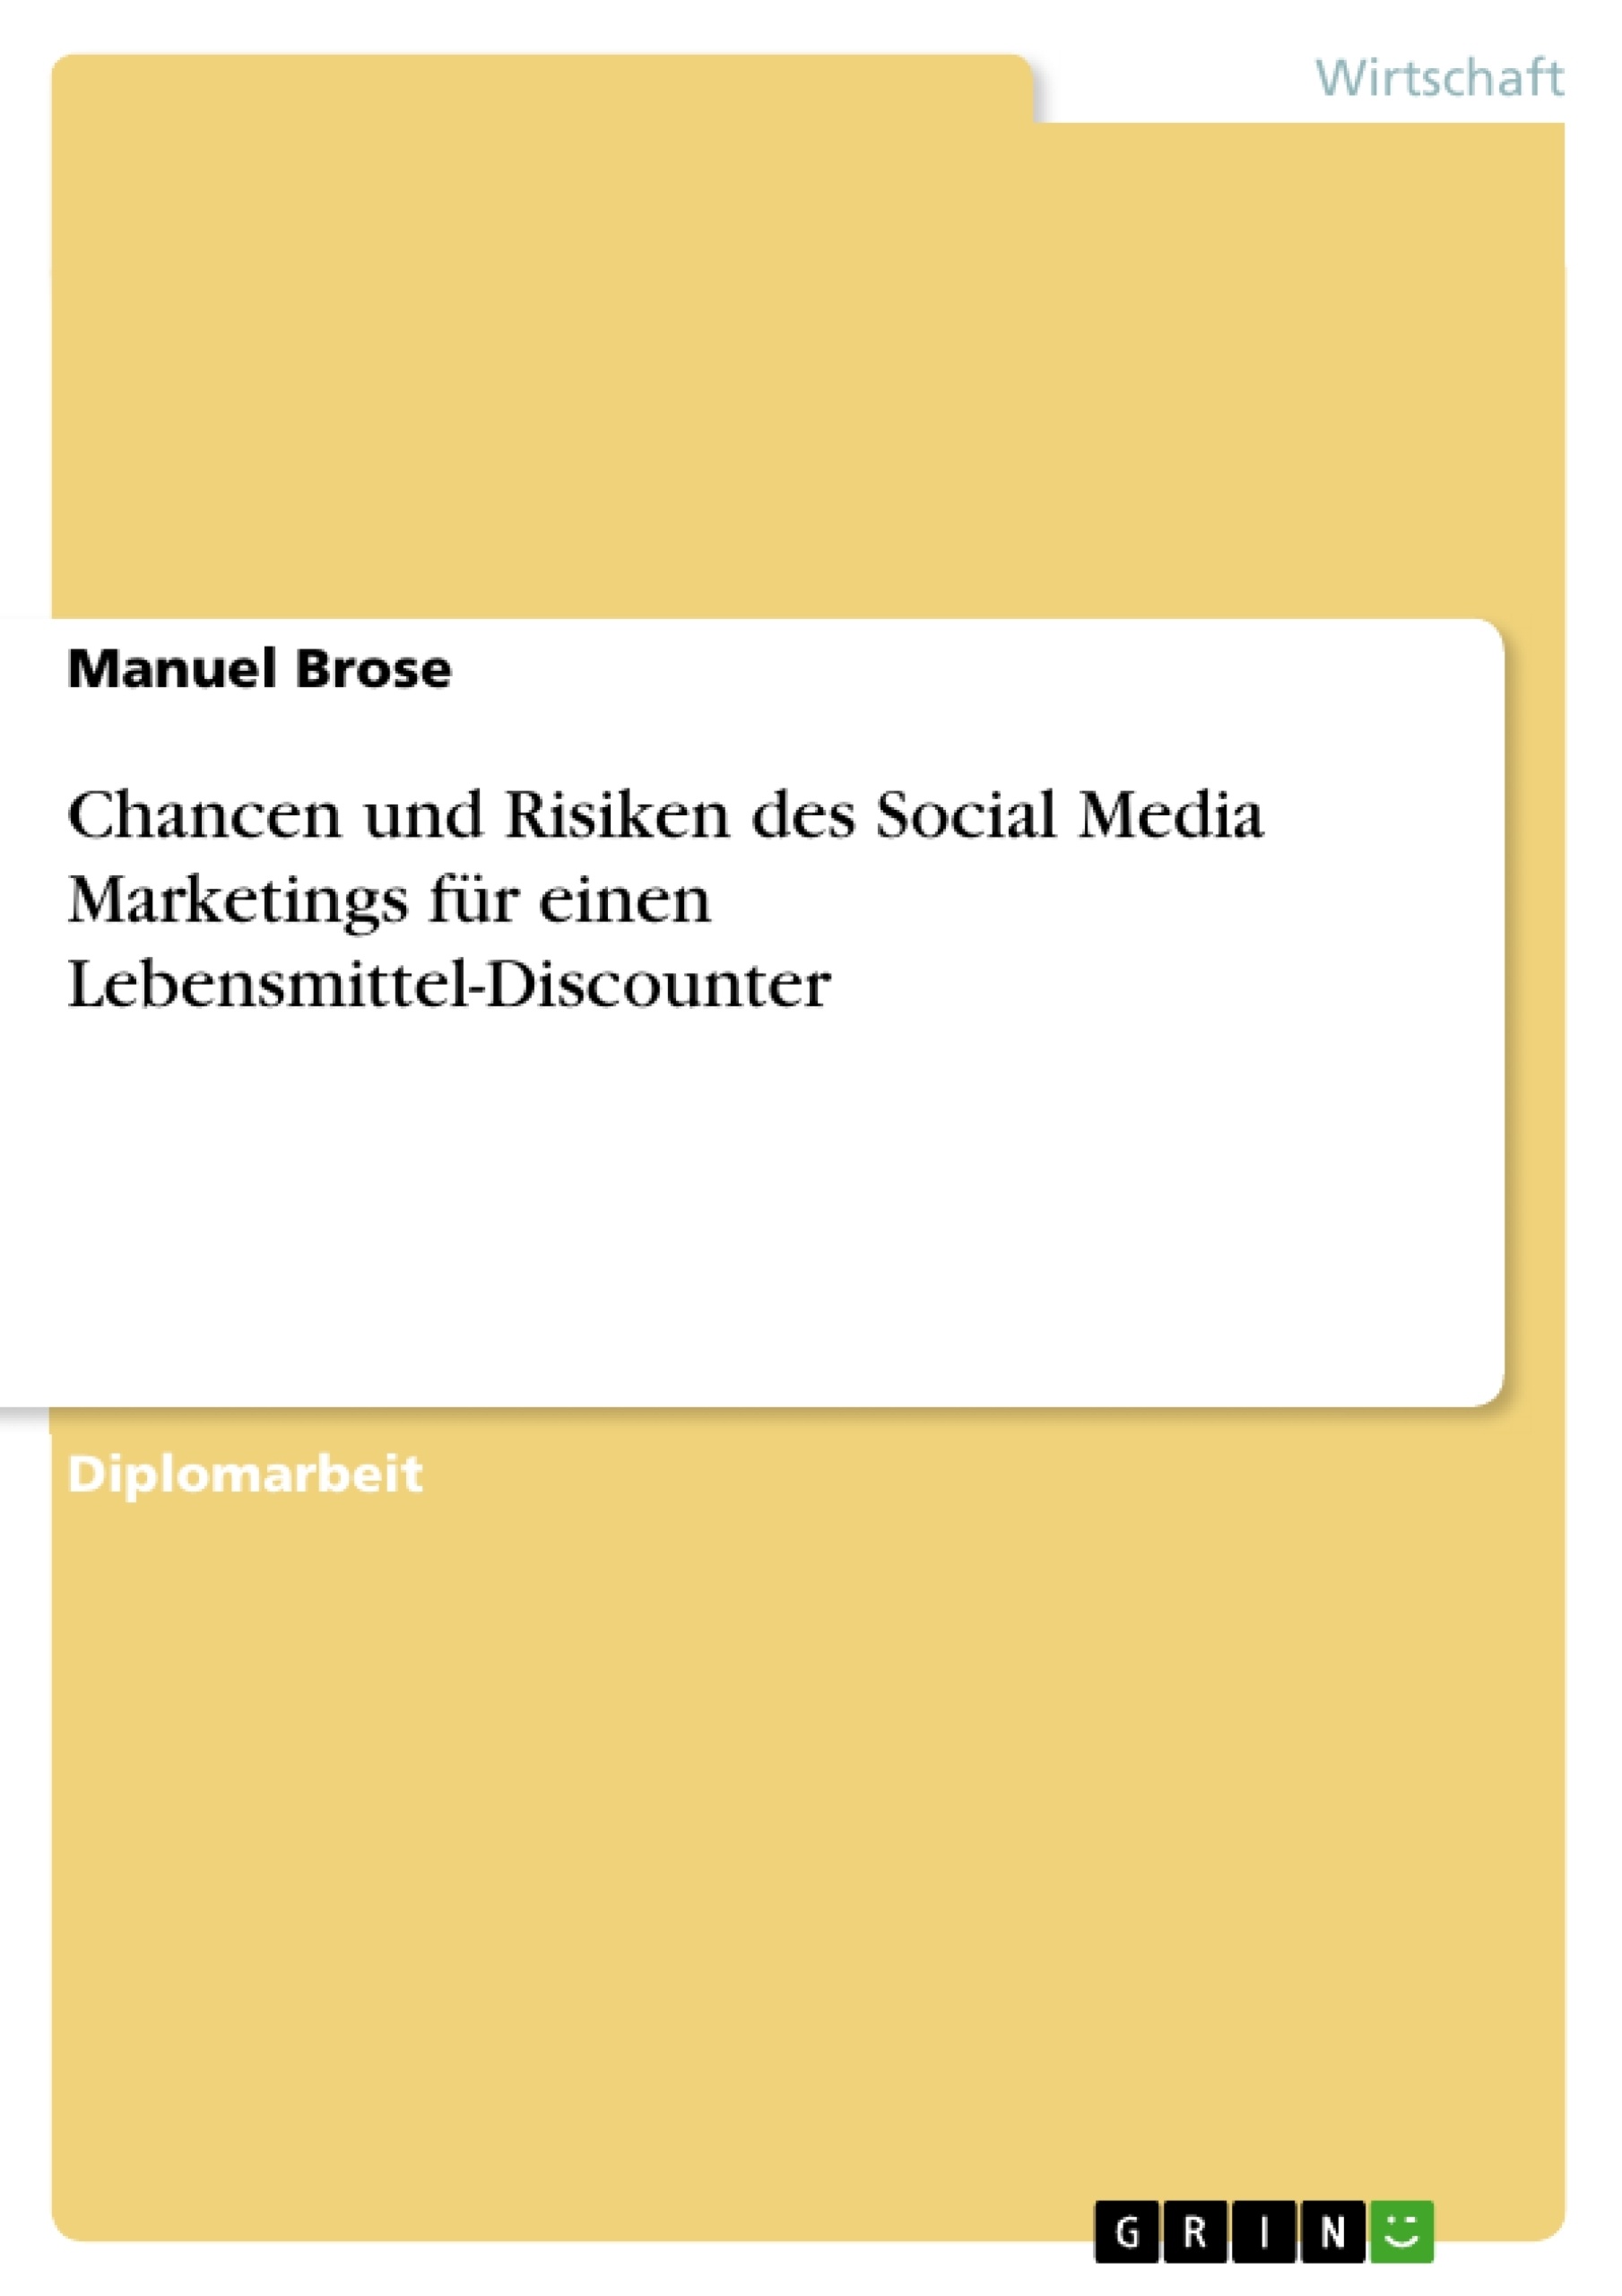 Título: Chancen und Risiken des Social Media Marketings für einen Lebensmittel-Discounter